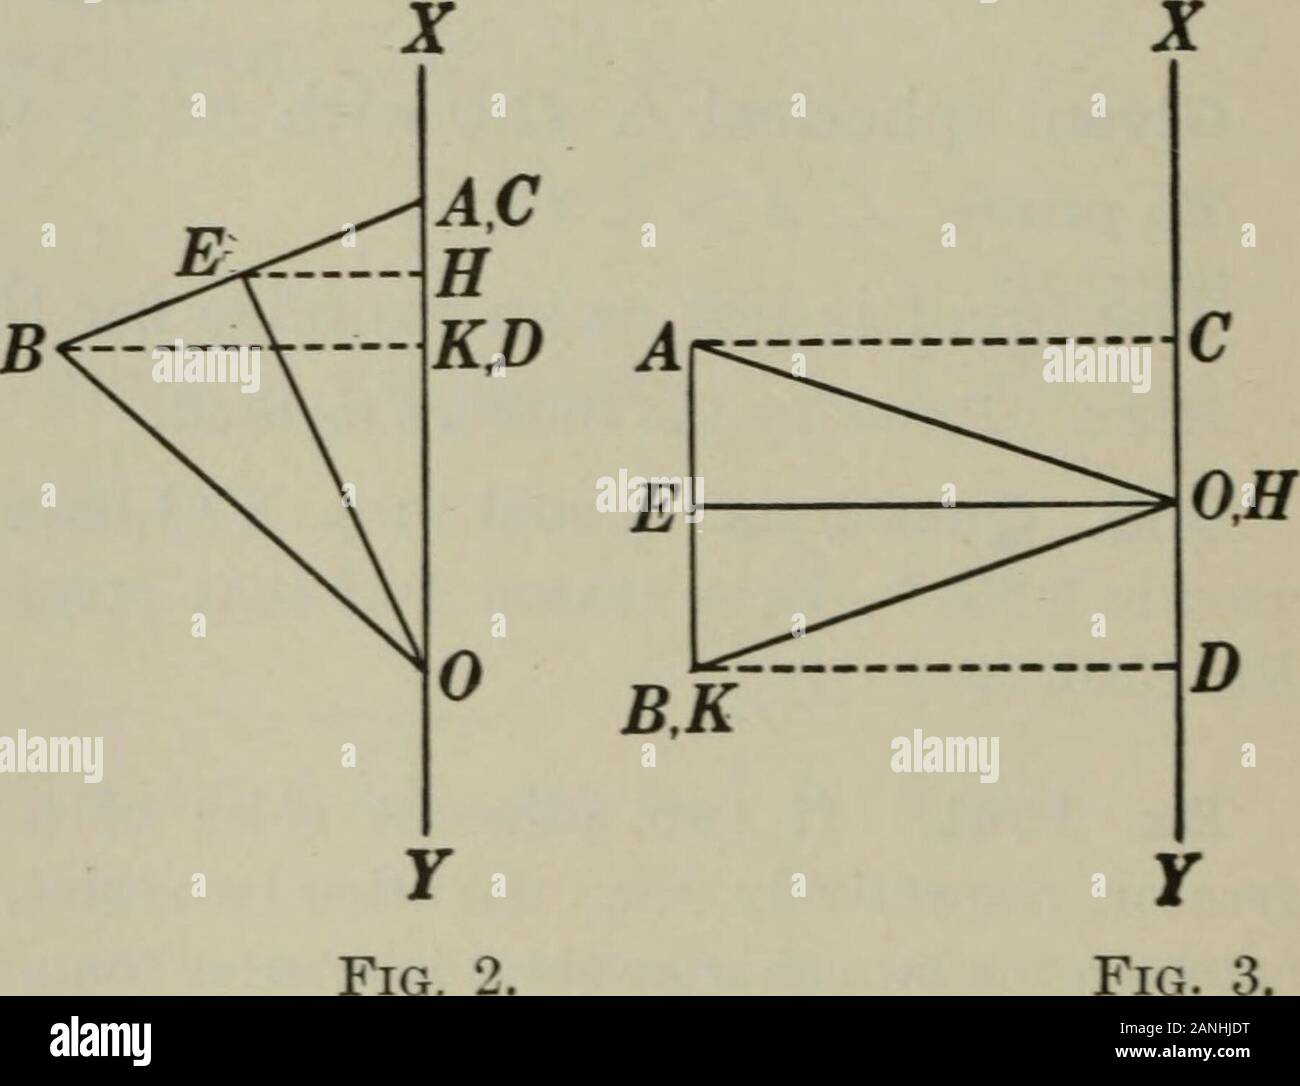 Géométrie plane et solide . Étant donné un triangle isocèle AOB avec base AB et de l'altitude, une ligne OE str.XY située dans le plan d'une AOB passant par 0 andnot intersections de la surface d'un CD et l'AOB, le projectionof AB sur XF ; que le domaine de la surface produite par AB bedenoted par zone AB. Pour prouver salon AB =CD2 ttOE. I. Si AB n'est pas 1 ! XT et XT ne répondent pas (Fig. 1). Argument seulement 1. E de tirer EH± XT 2. Depuis la surface produite par AB est la surface d'afrustum d'un cône circulaire Rt., zone AB  = AB • 2 irEH. 3. D'UN TIRAGE AK± BD. 4. Puis en rt. Un BAK et service santé, BAE Z  = Z service santé. Le Livre IX 4455. .-. ABAK Banque D'Images